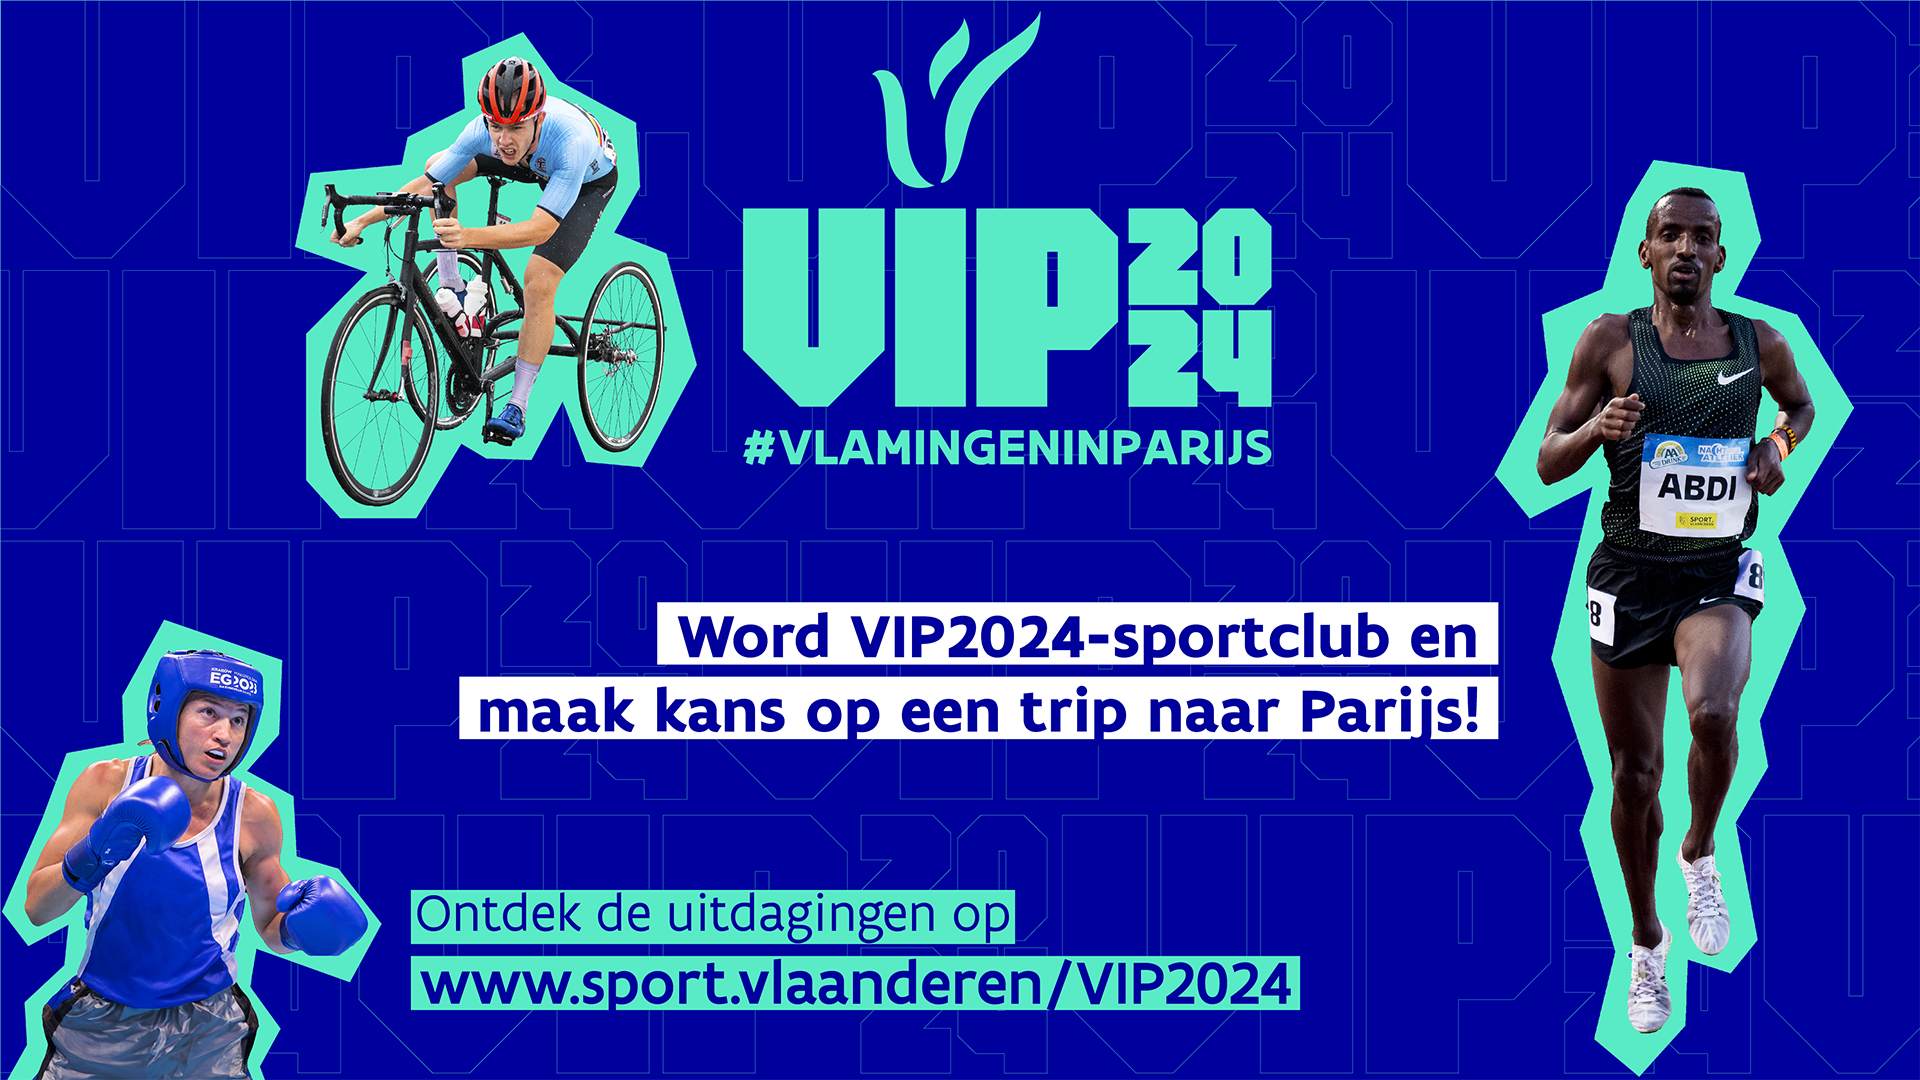 Campagnebeeld VIP2024 voor sportclubs